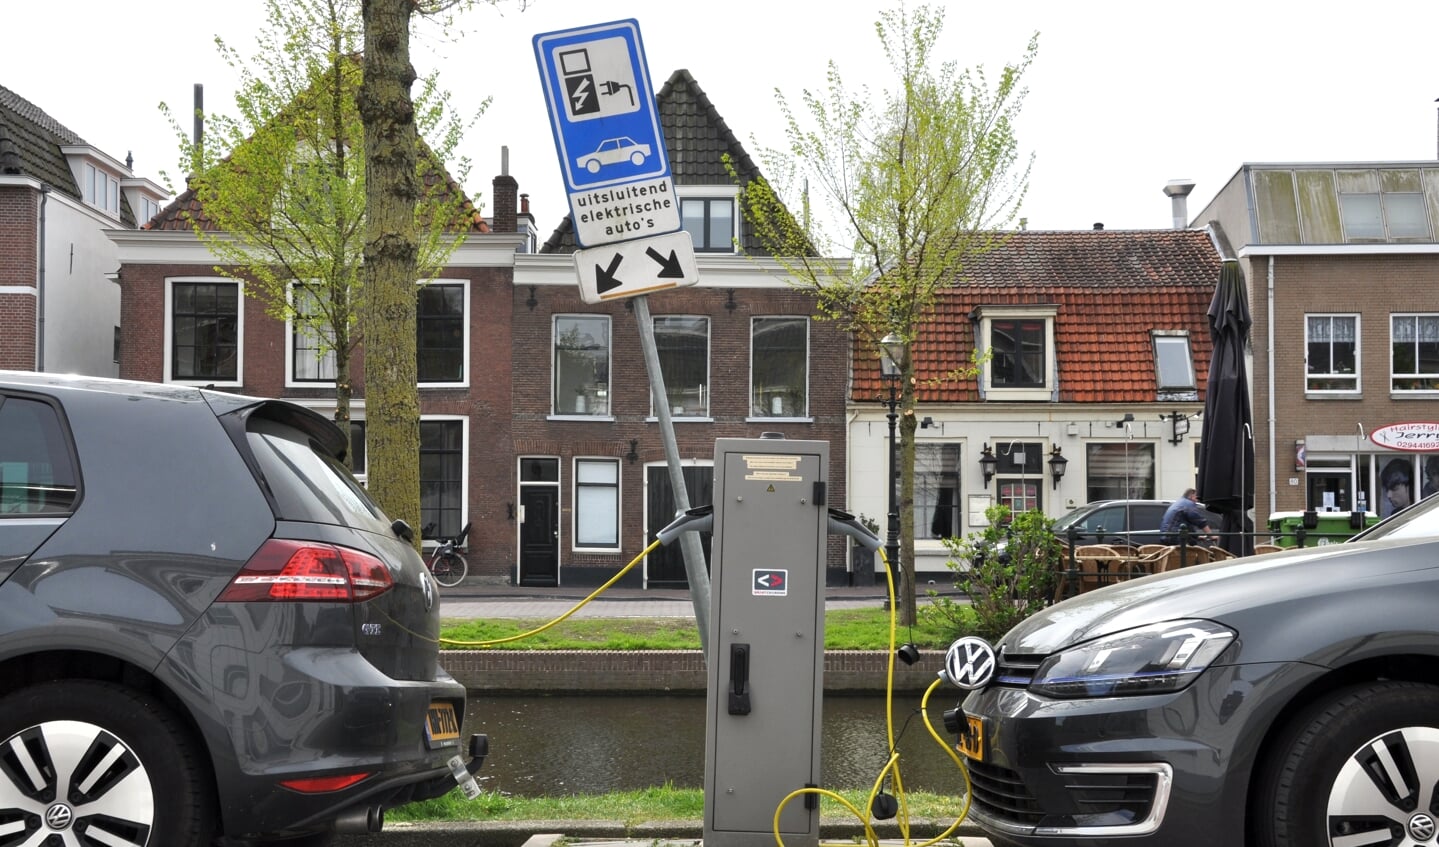 Nederland is de absolute koploper in de Europese Unie wat betreft laadpalen voor elektrische auto’s. 